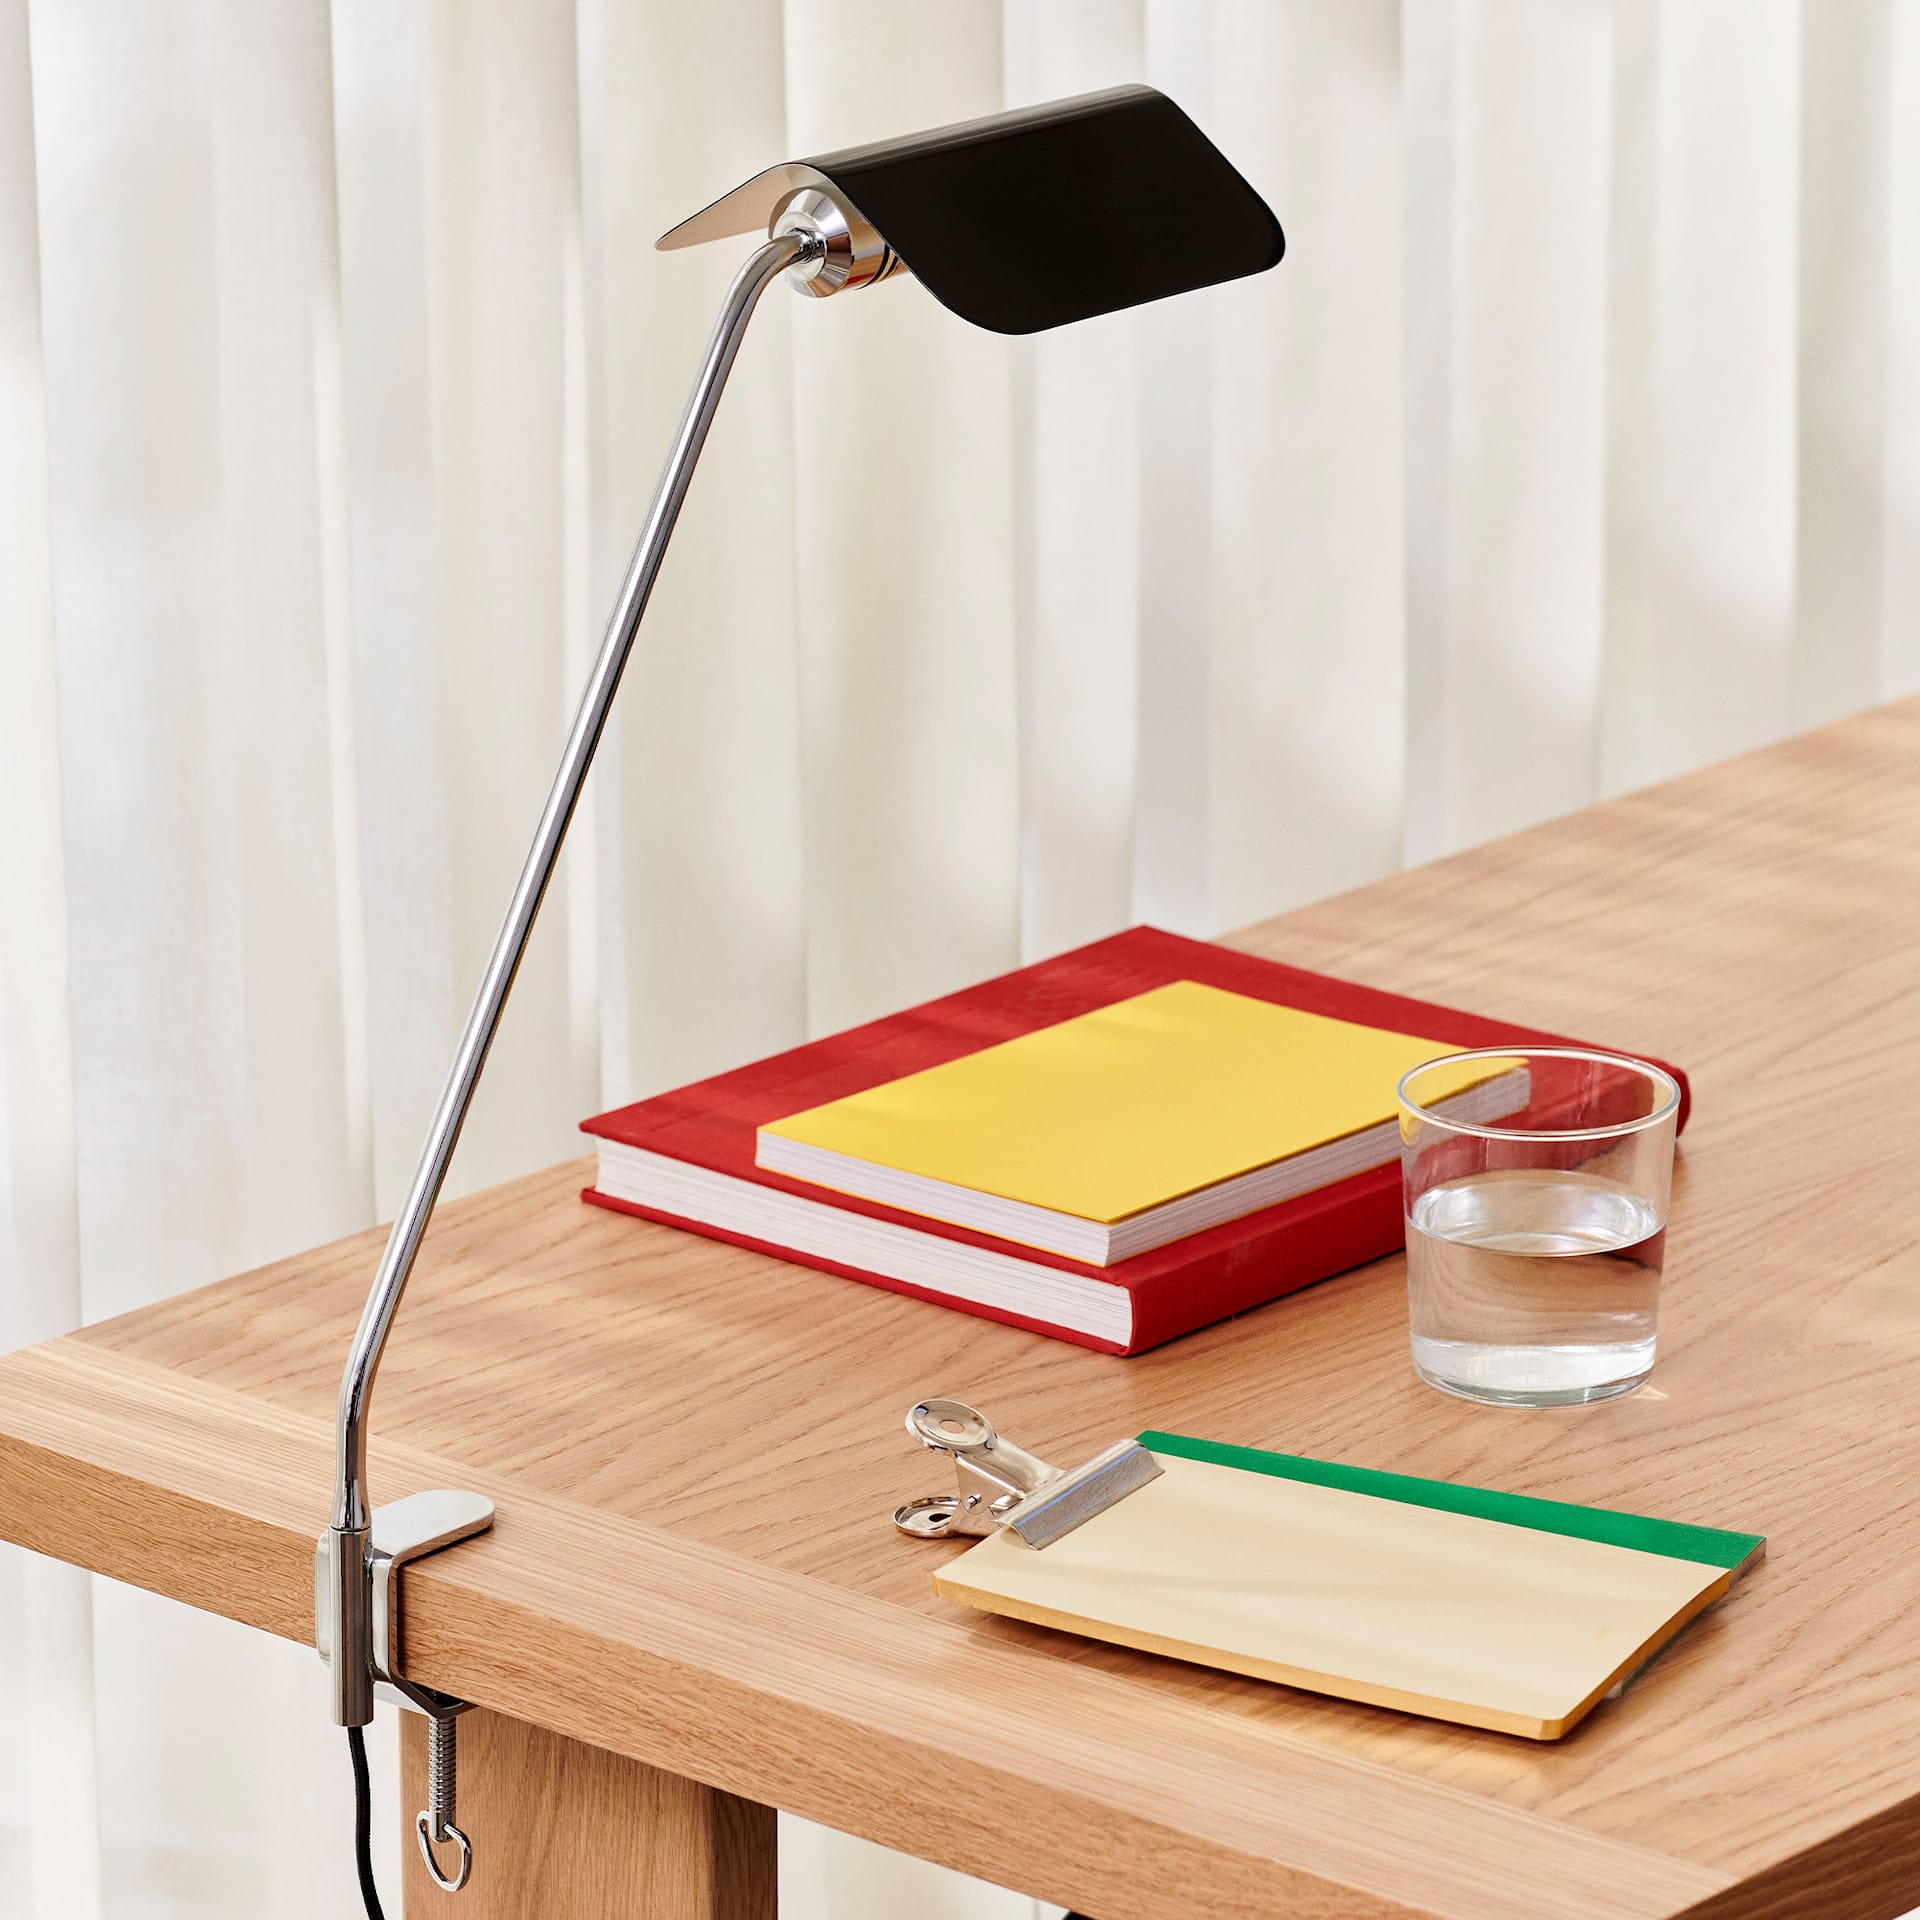 Apex Desk Clip Lamp - HAY - NO GA